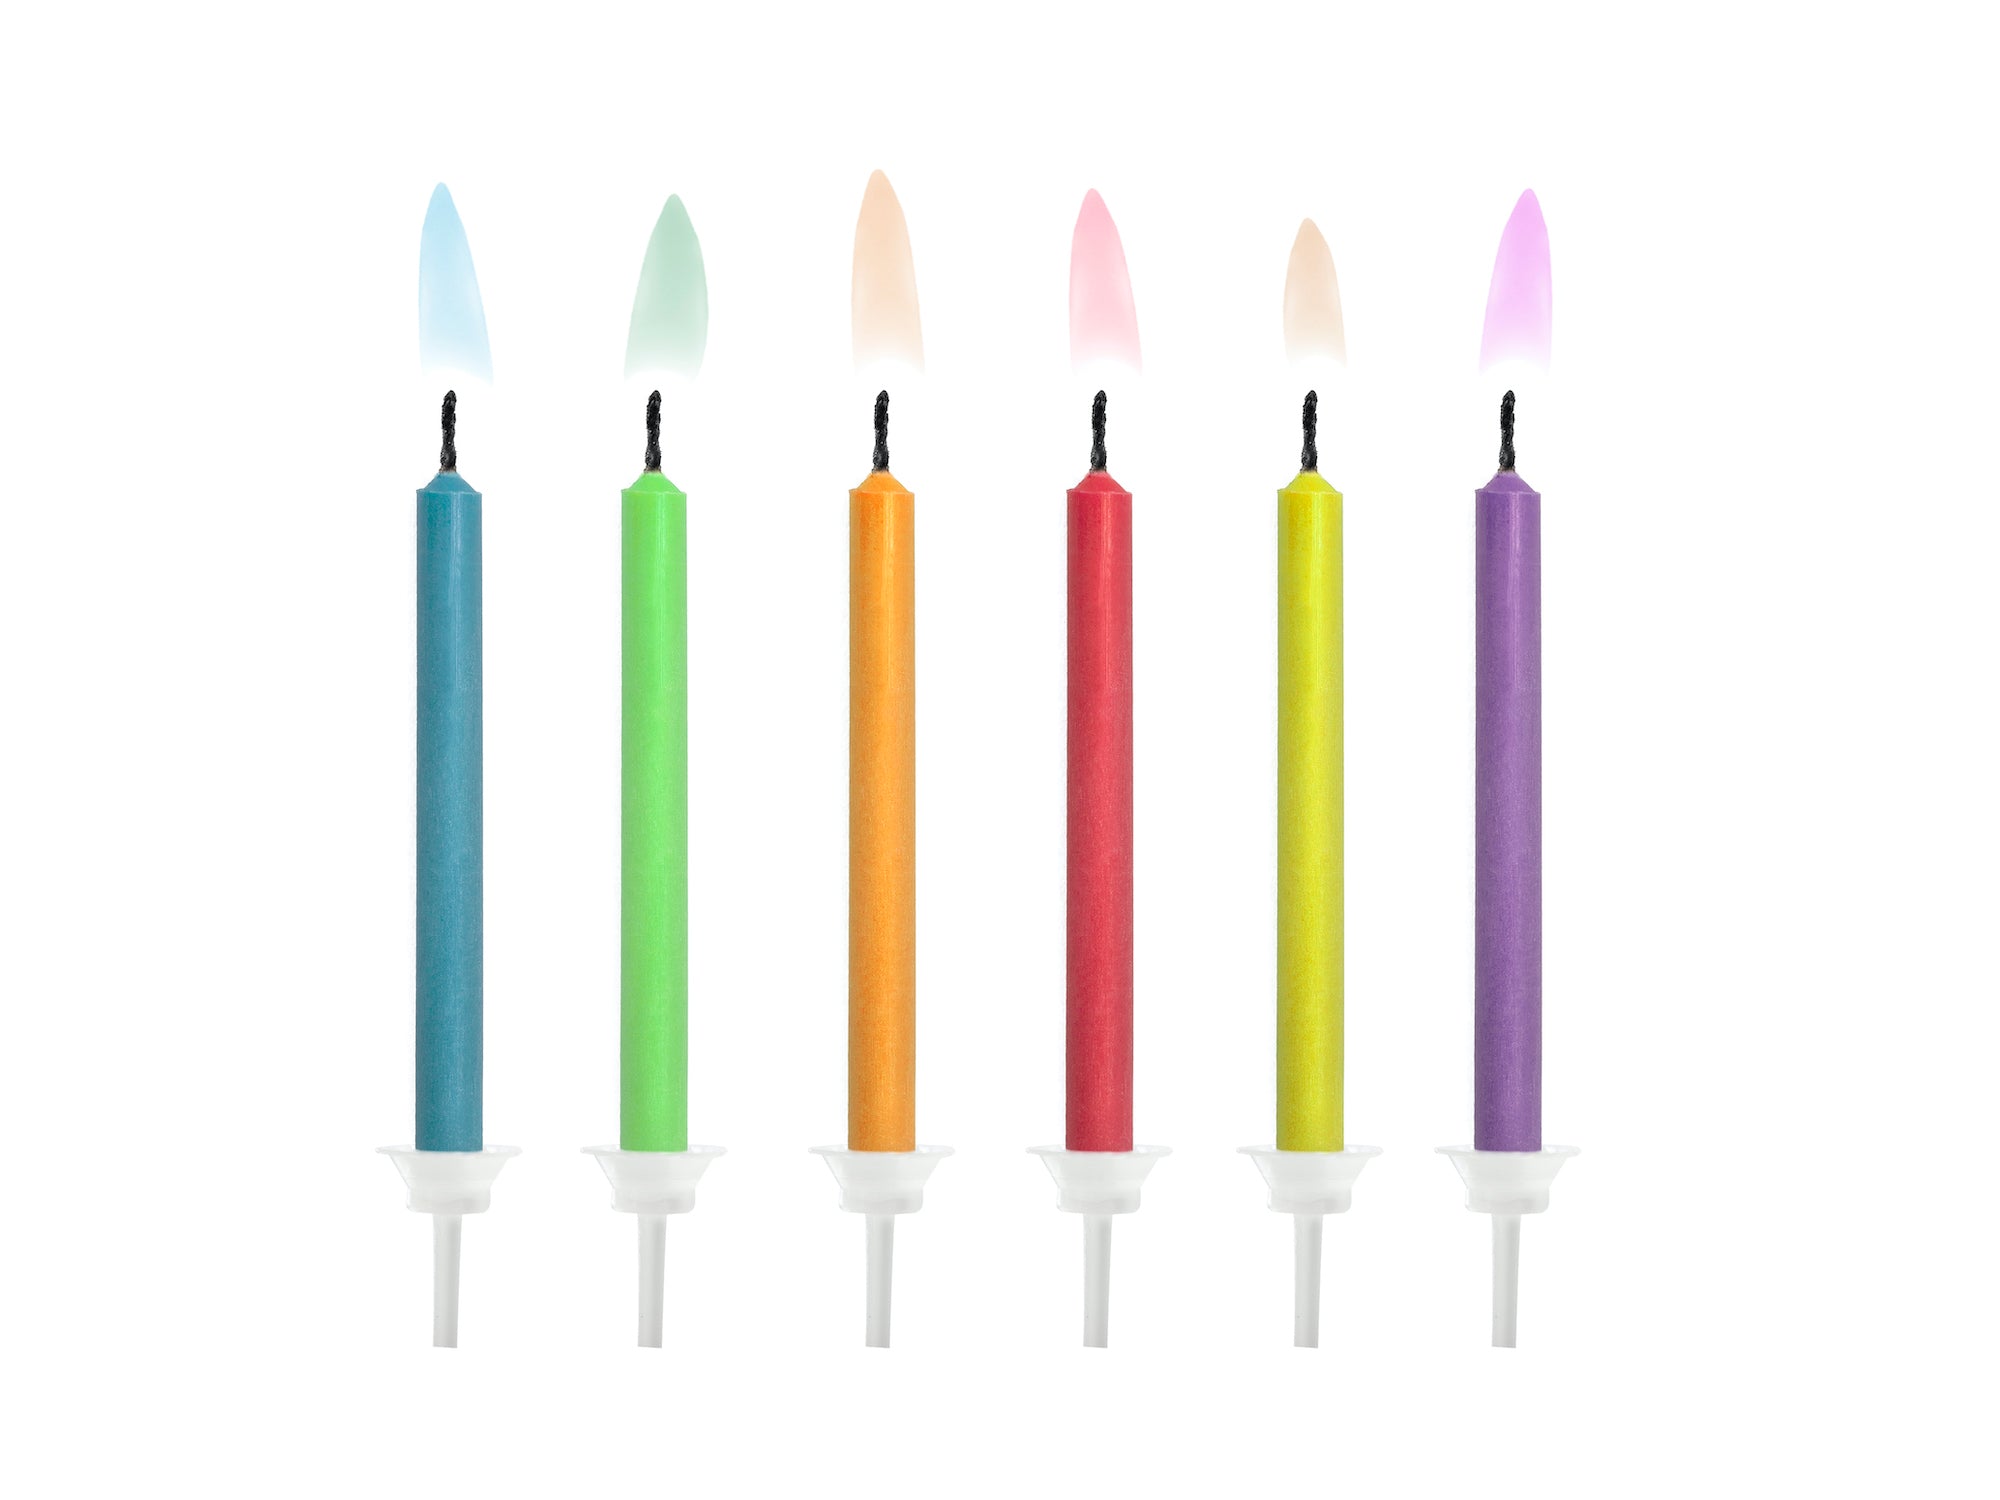 Bougies d'anniversaire Flammes colorées - Pack de 6 pcs PartyDeco 